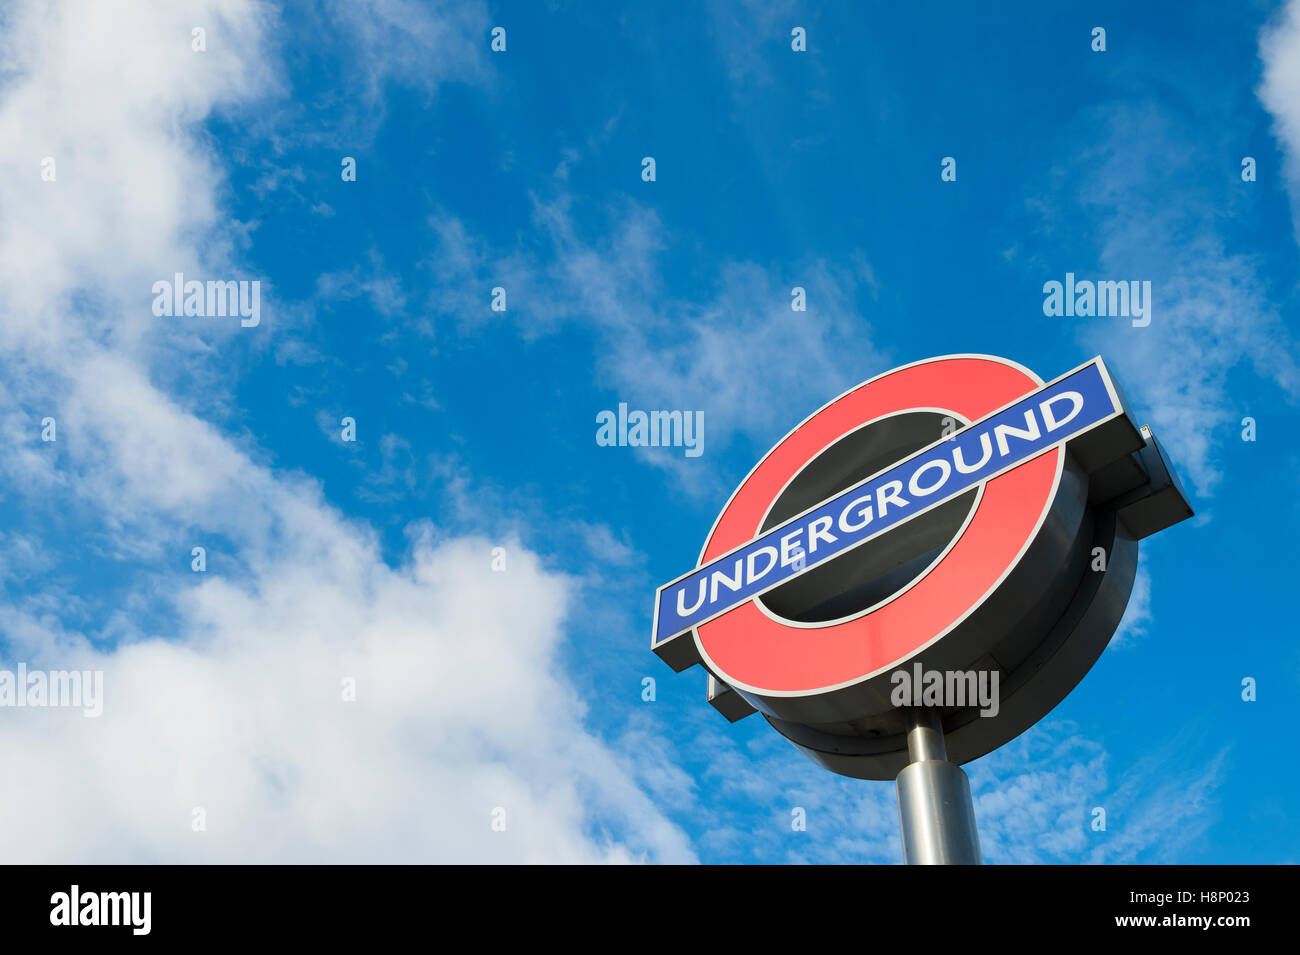 Londres - le 14 novembre 2016 : London Underground classique cocarde signe, une icône à valoir sur le manager Frank Pick dans les années 1900. Banque D'Images